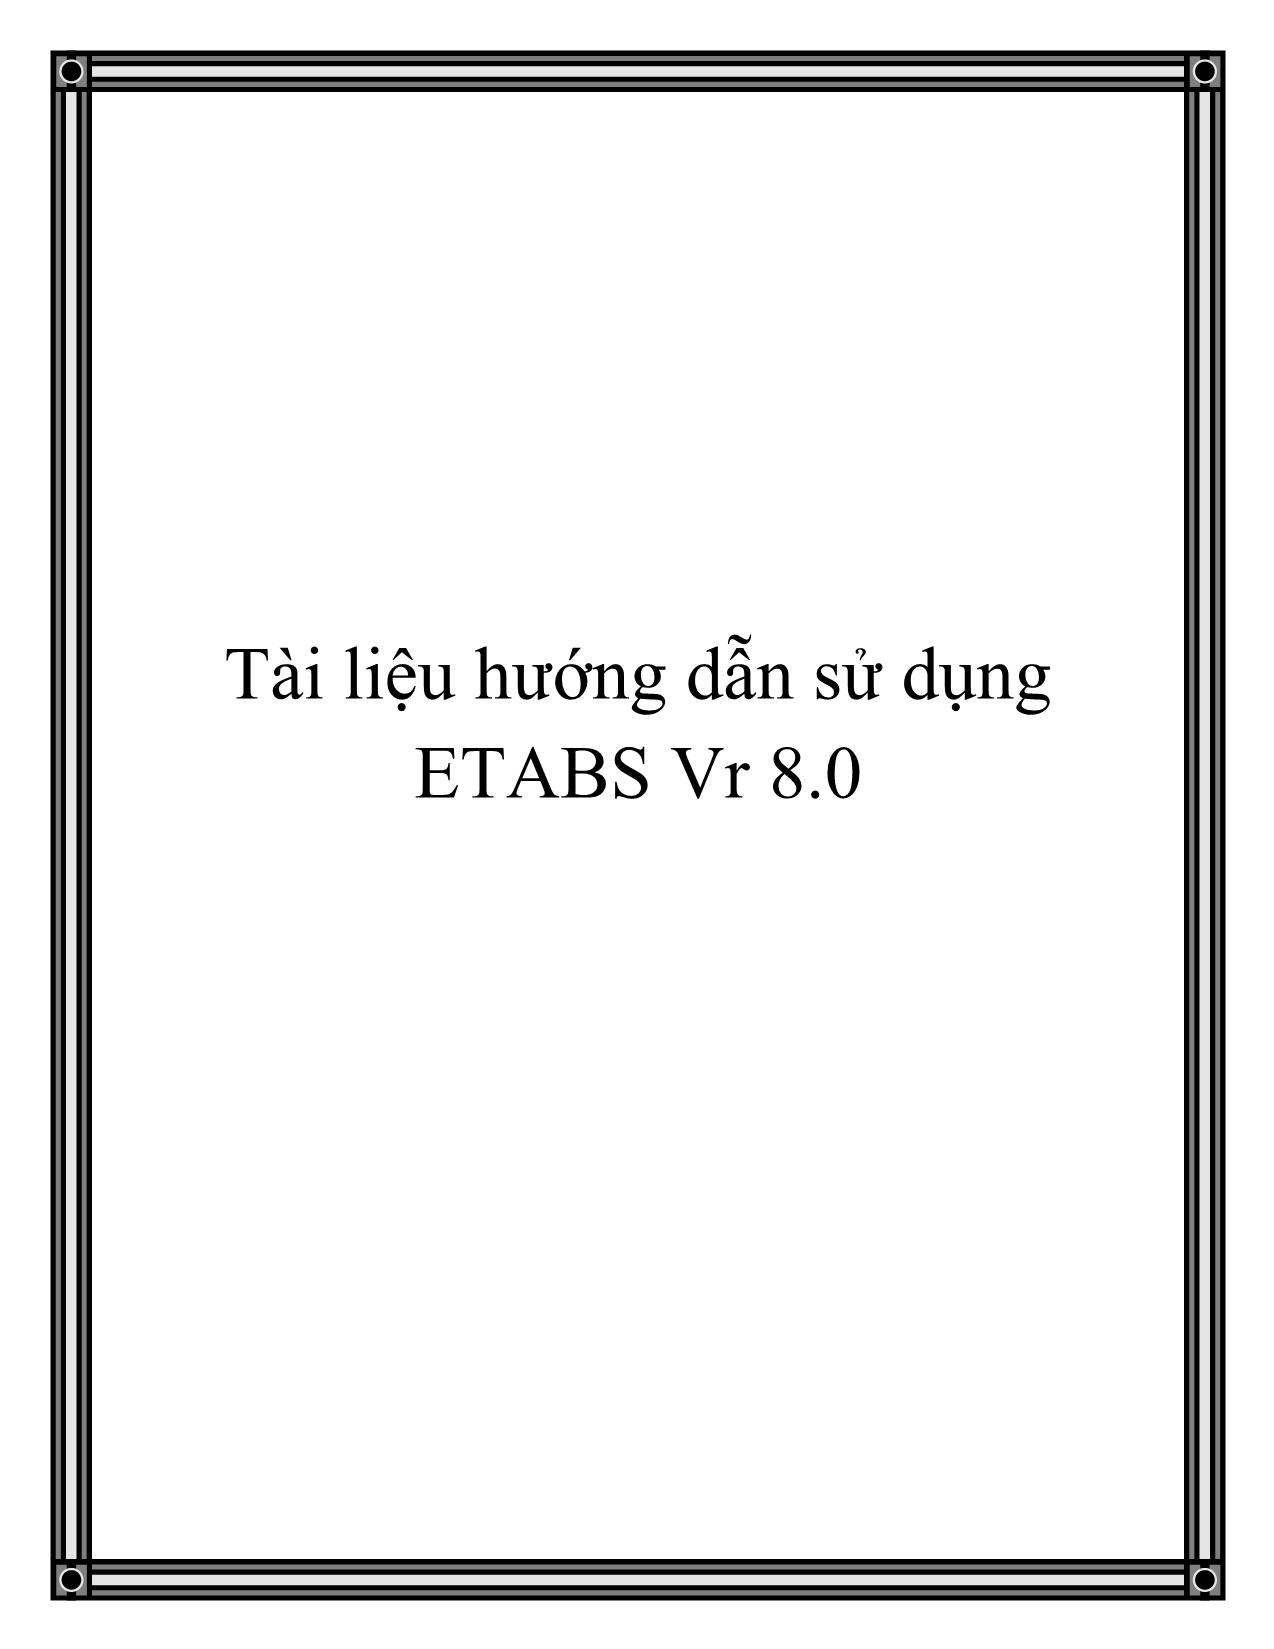 Tài liệu hướng dẫn sử dụng ETABS Vr 8.0 trang 1